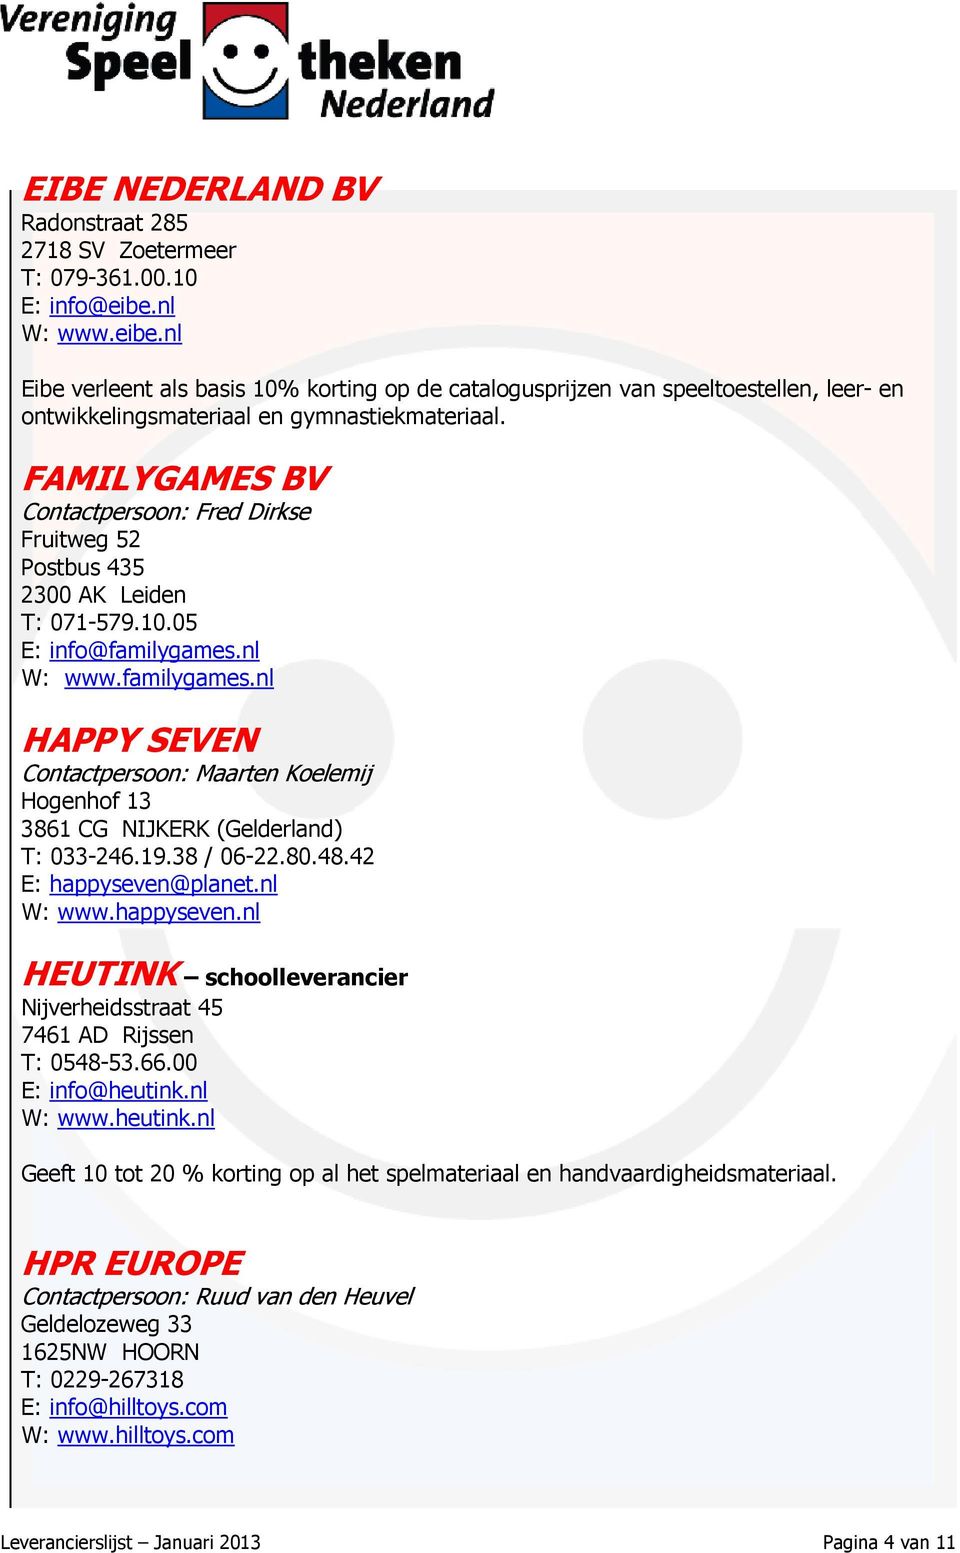 FAMILYGAMES BV Contactpersoon: Fred Dirkse Fruitweg 52 Postbus 435 2300 AK Leiden T: 071-579.10.05 E: info@familygames.